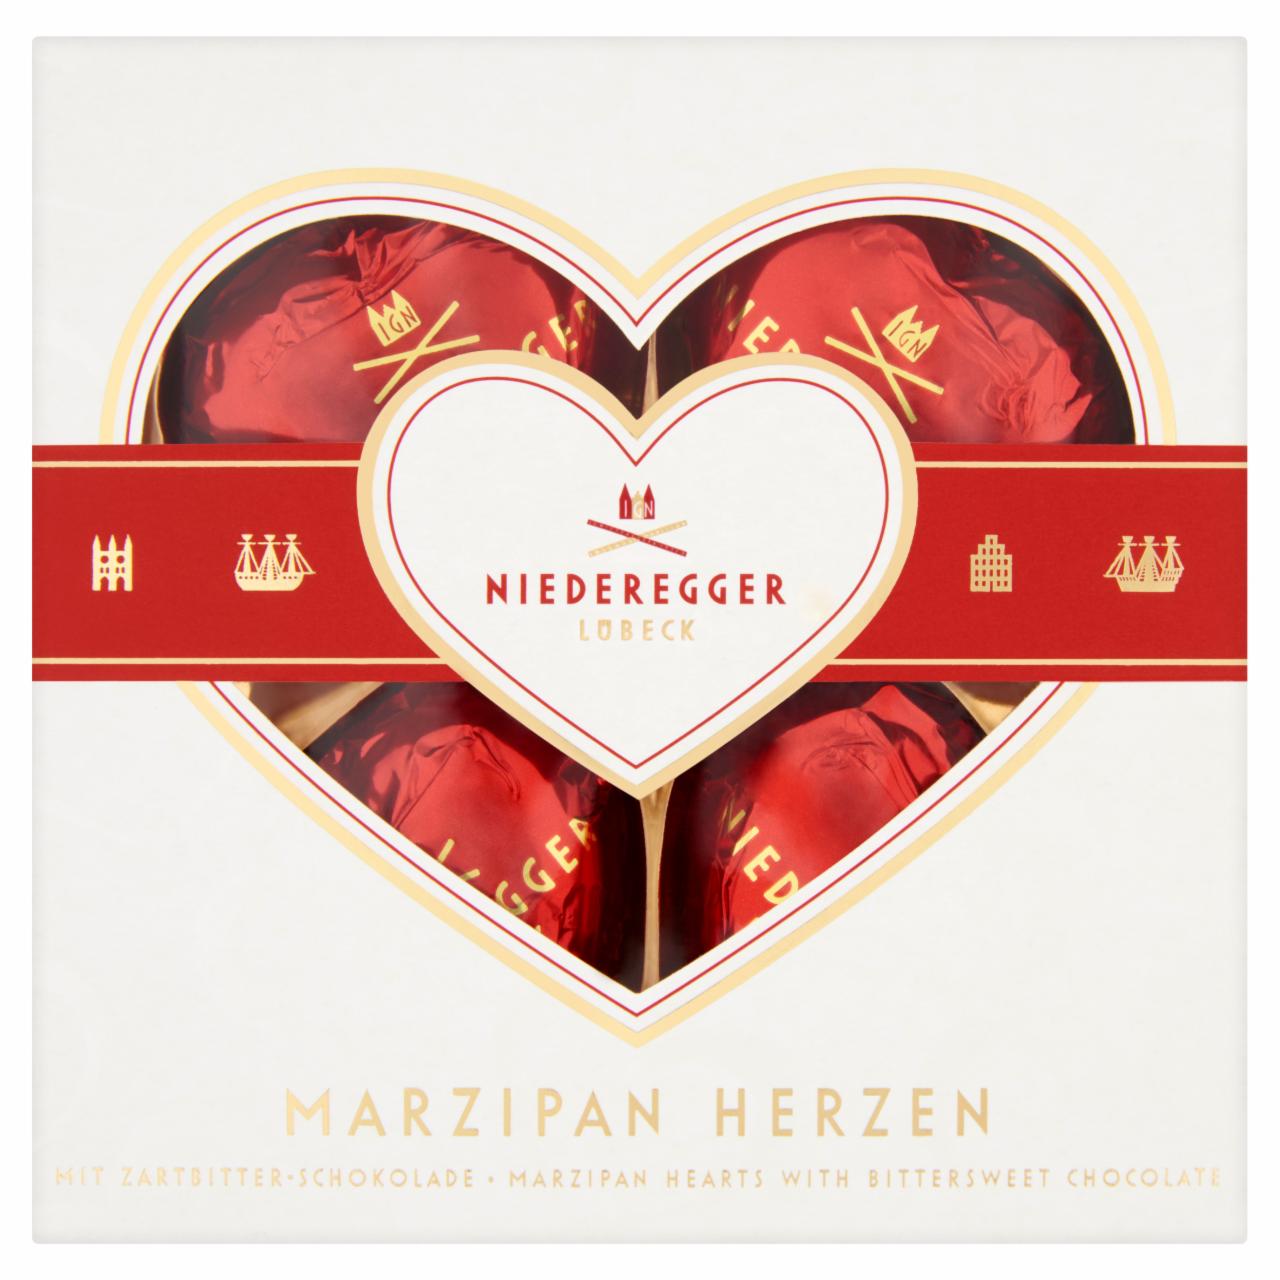 Képek - Niederegger prémium marcipán szívek étcsokoládéból, marcipán töltelékkel 50 g